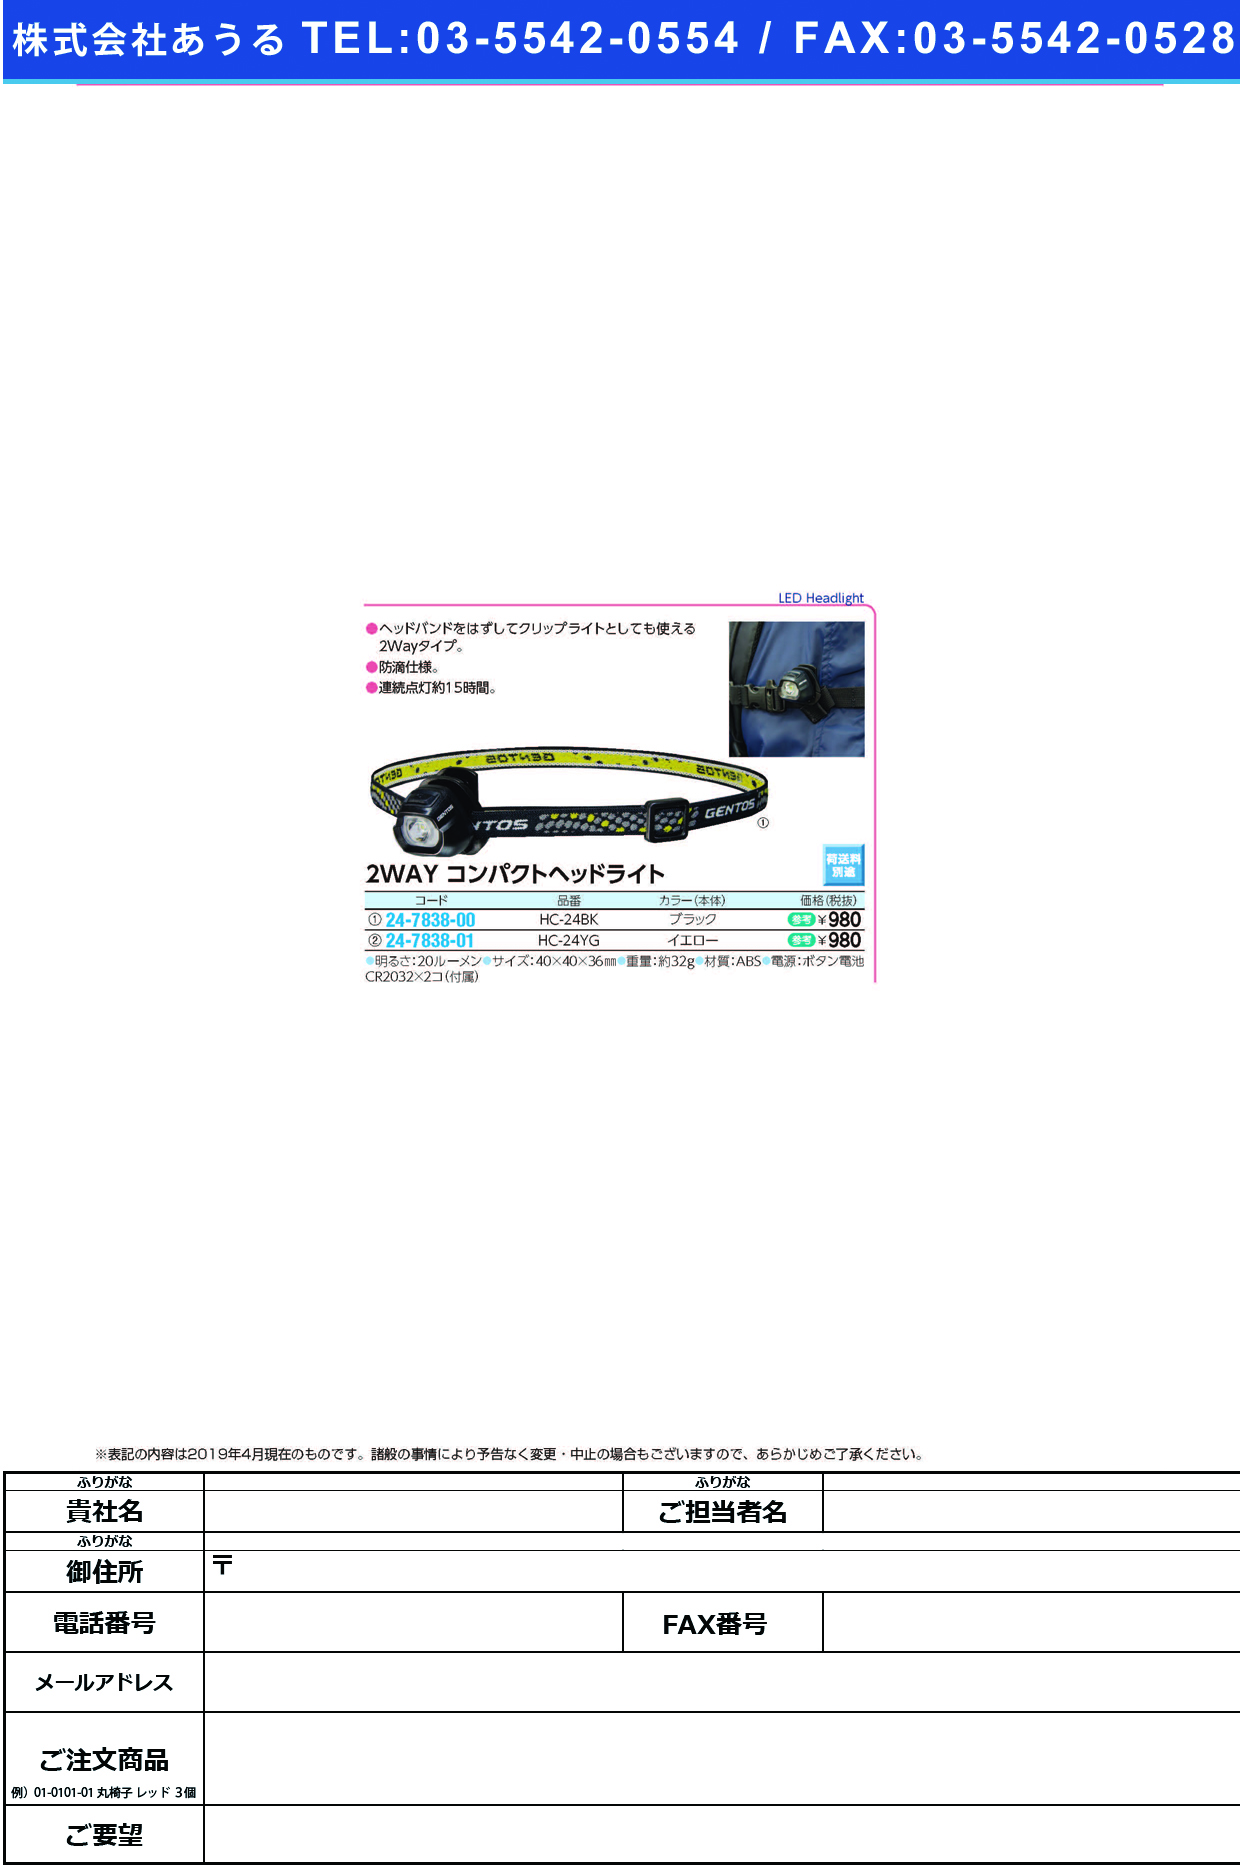 (24-7838-00)コンパクトヘッドライトHC-24BK ｺﾝﾊﾟｸﾄﾍｯﾄﾞﾗｲﾄ(ジェントス)【1個単位】【2019年カタログ商品】